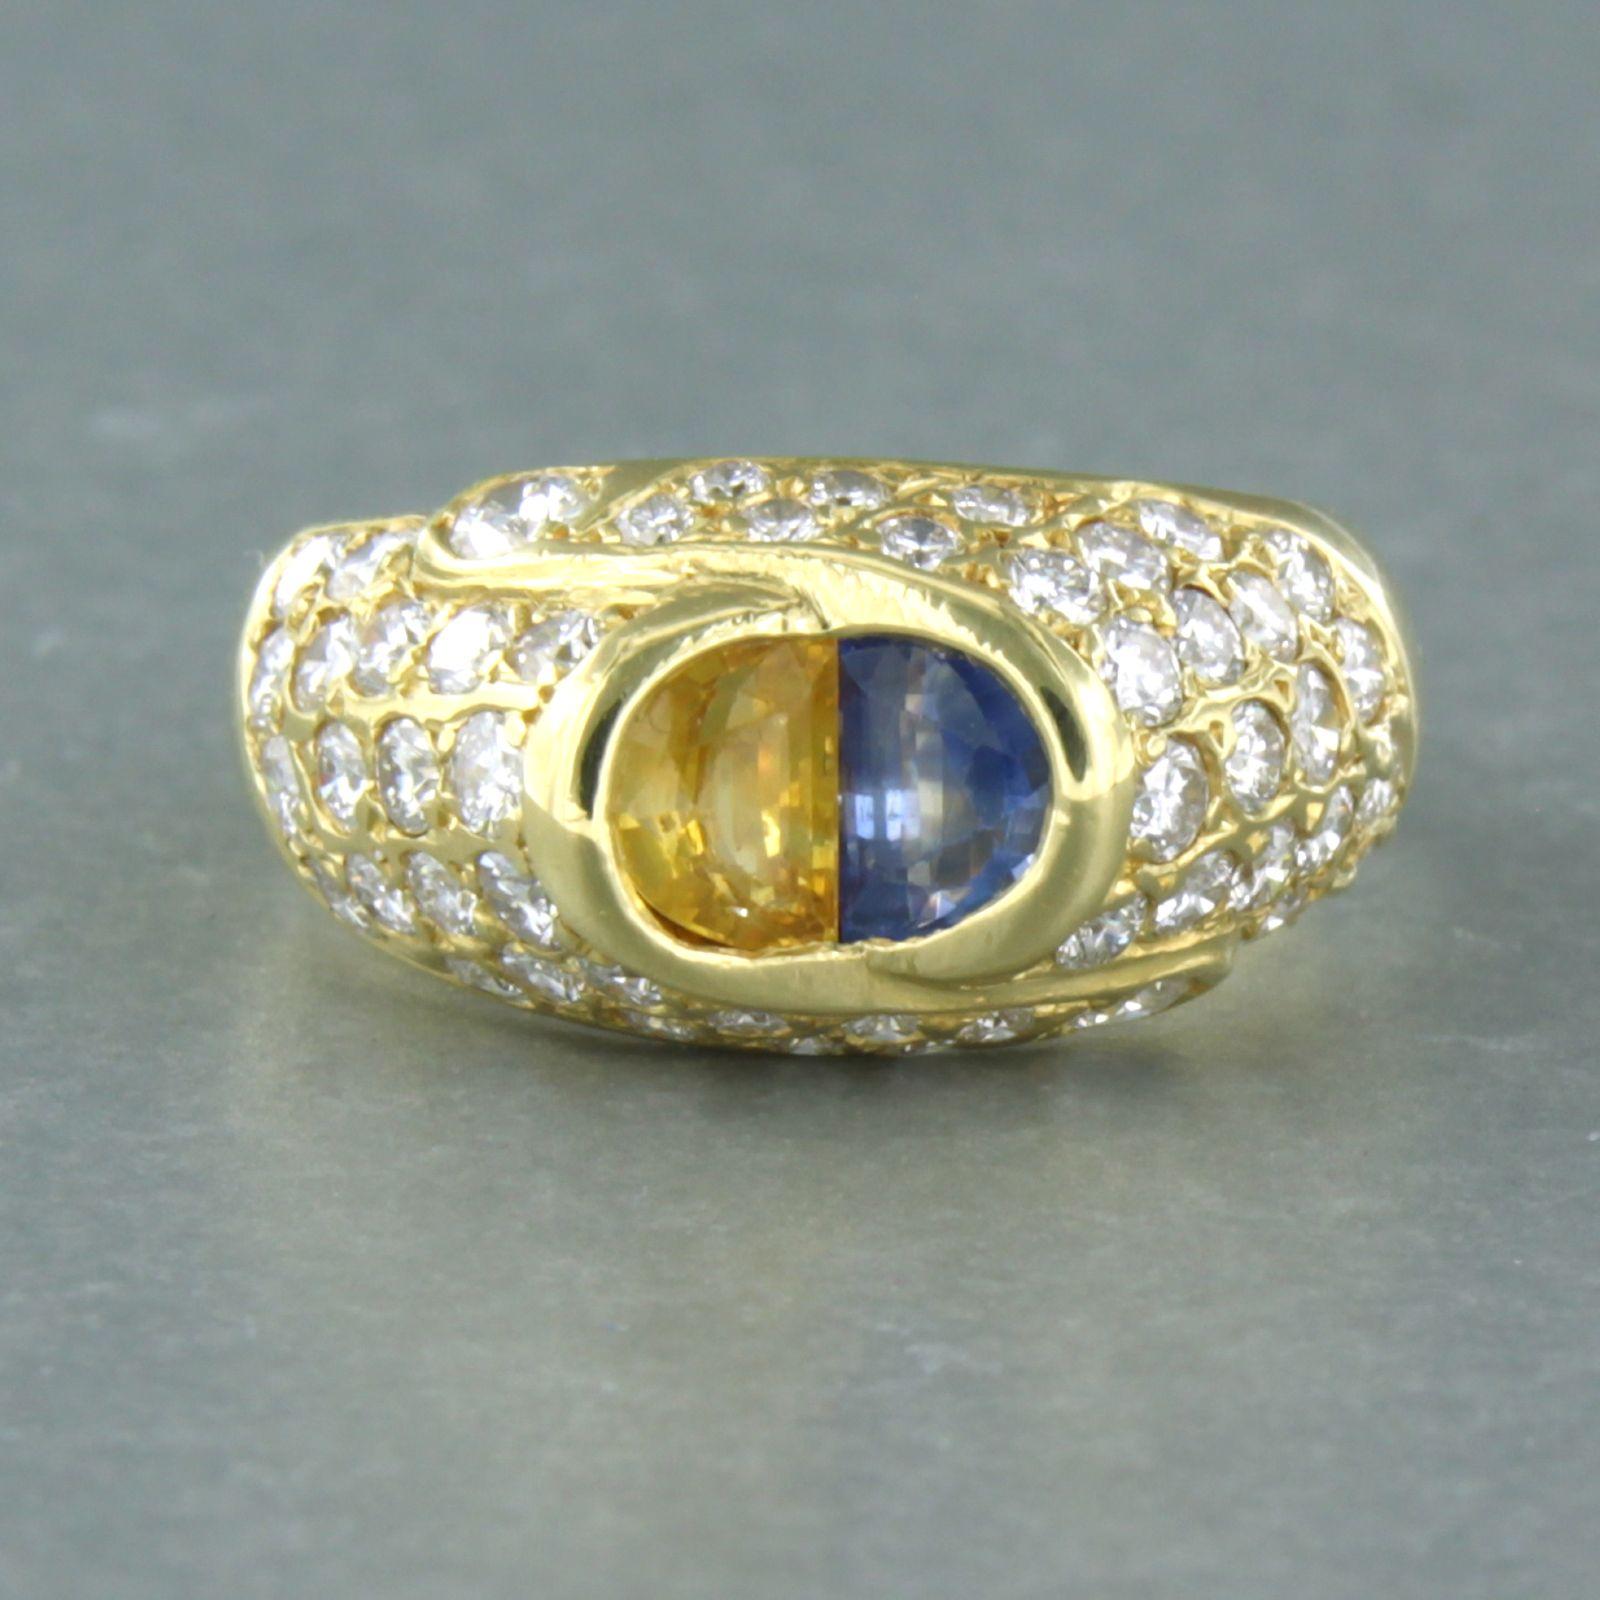 Ring aus 18 Karat Gelbgold, besetzt mit gelben und blauen Saphiren und Diamanten im Brillantschliff. 1.50ct -F/G - VS/SI - Ringgröße U.S. 6.5 - EU. 17(53)

detaillierte Beschreibung:

Die Oberseite des Rings ist 1.0 cm breit

Ringgröße U.S. 6.5 -